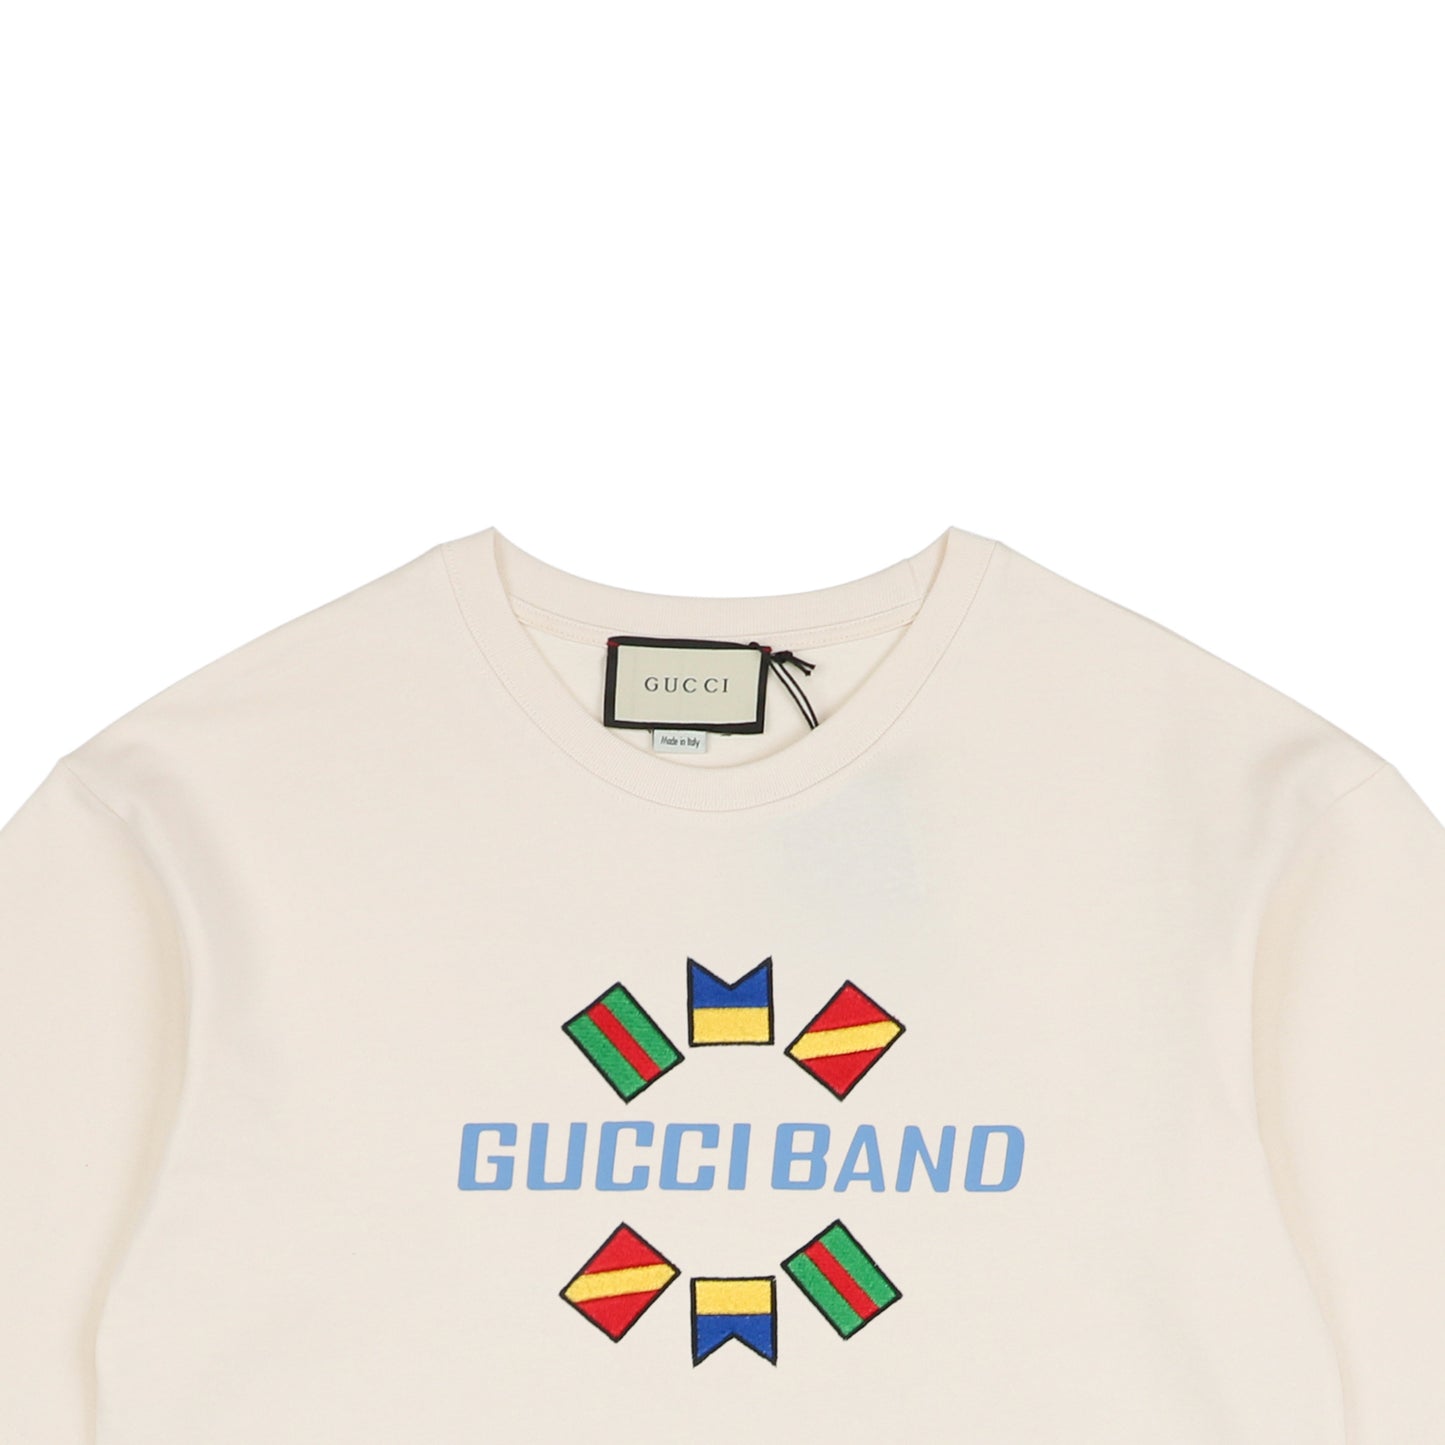 Gucc1 Band Cream T-Shirt